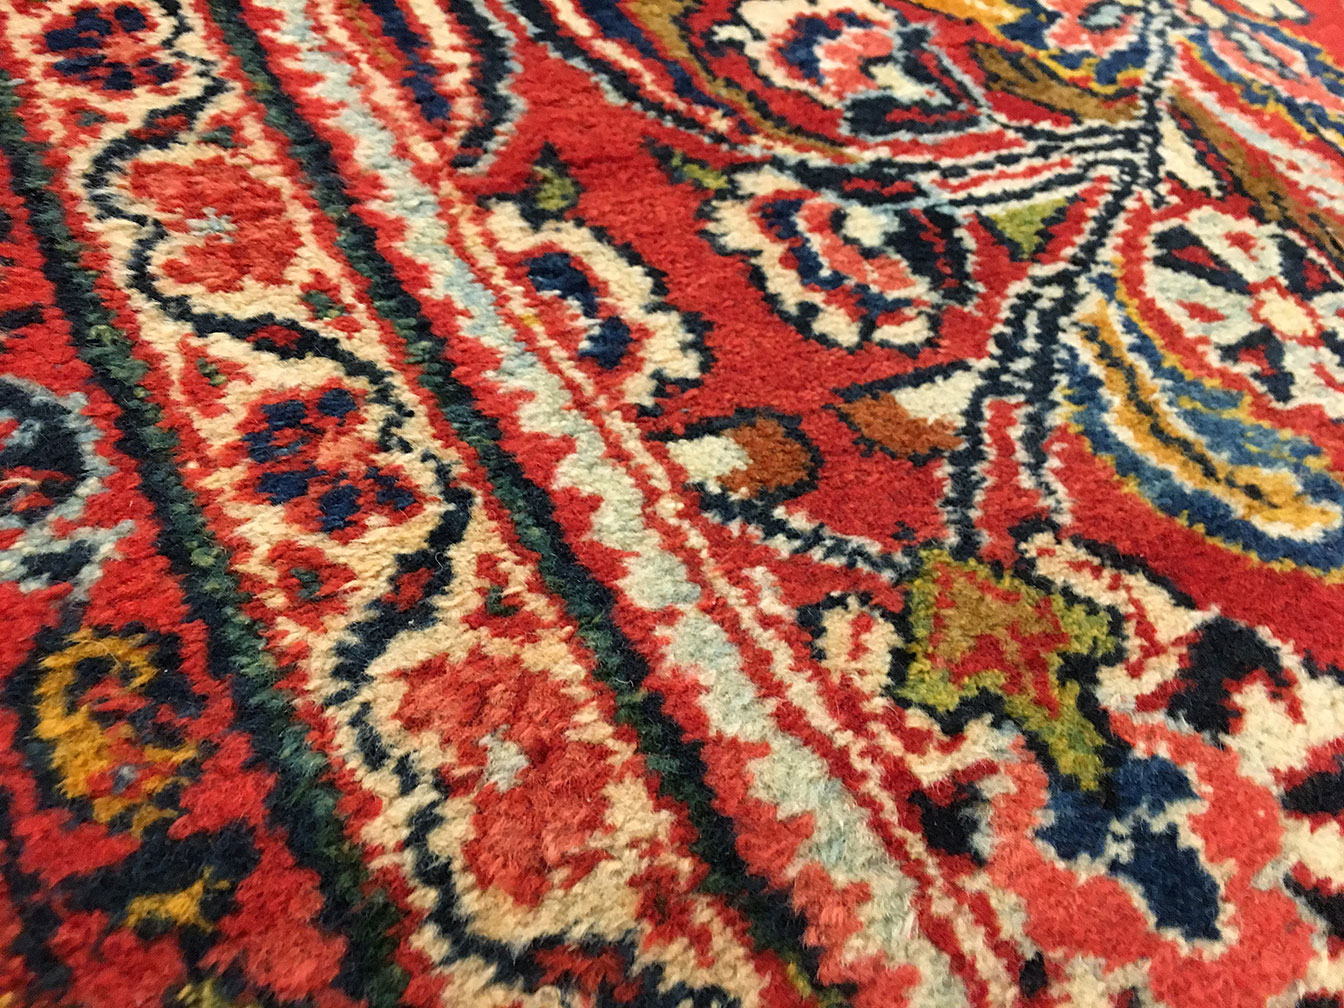 Antique mahal Carpet - # 52472